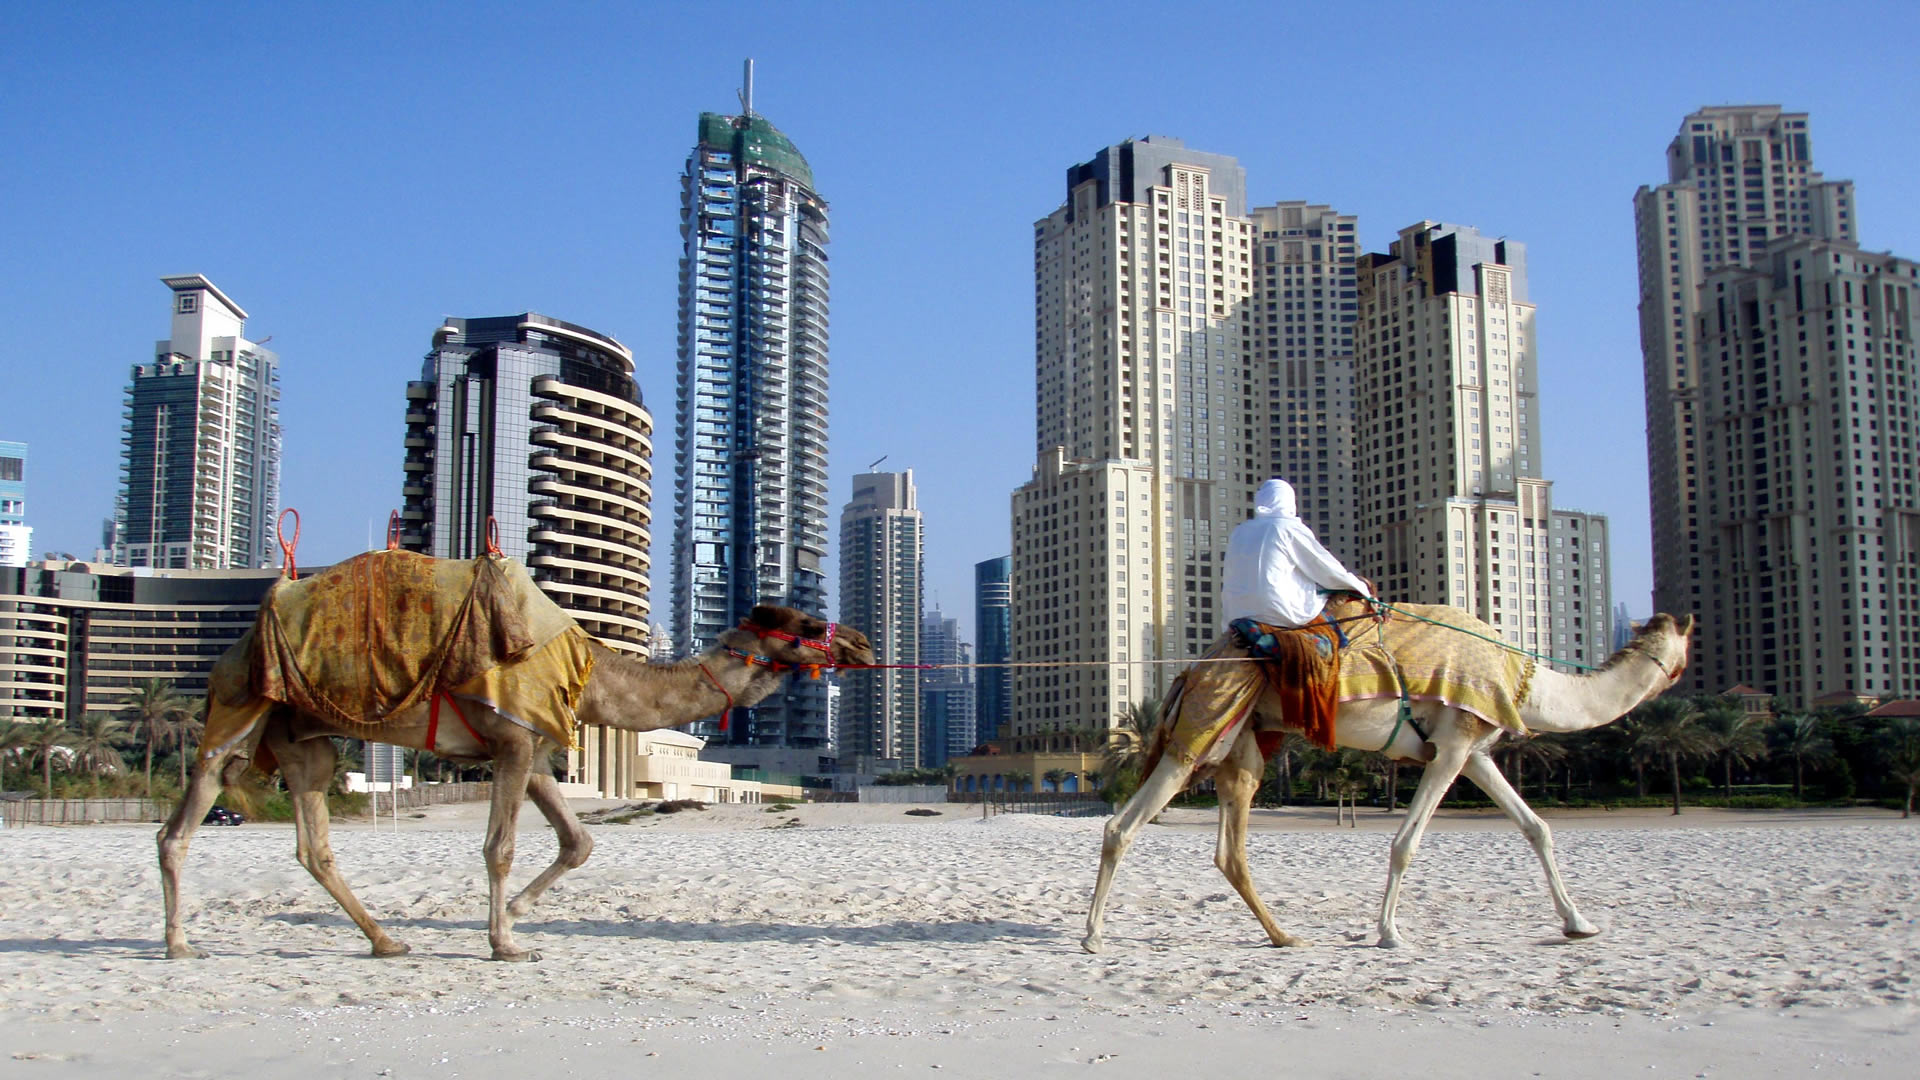 tapete arab,kamel,arabisches kamel,tierwelt,fotografie,landschaft